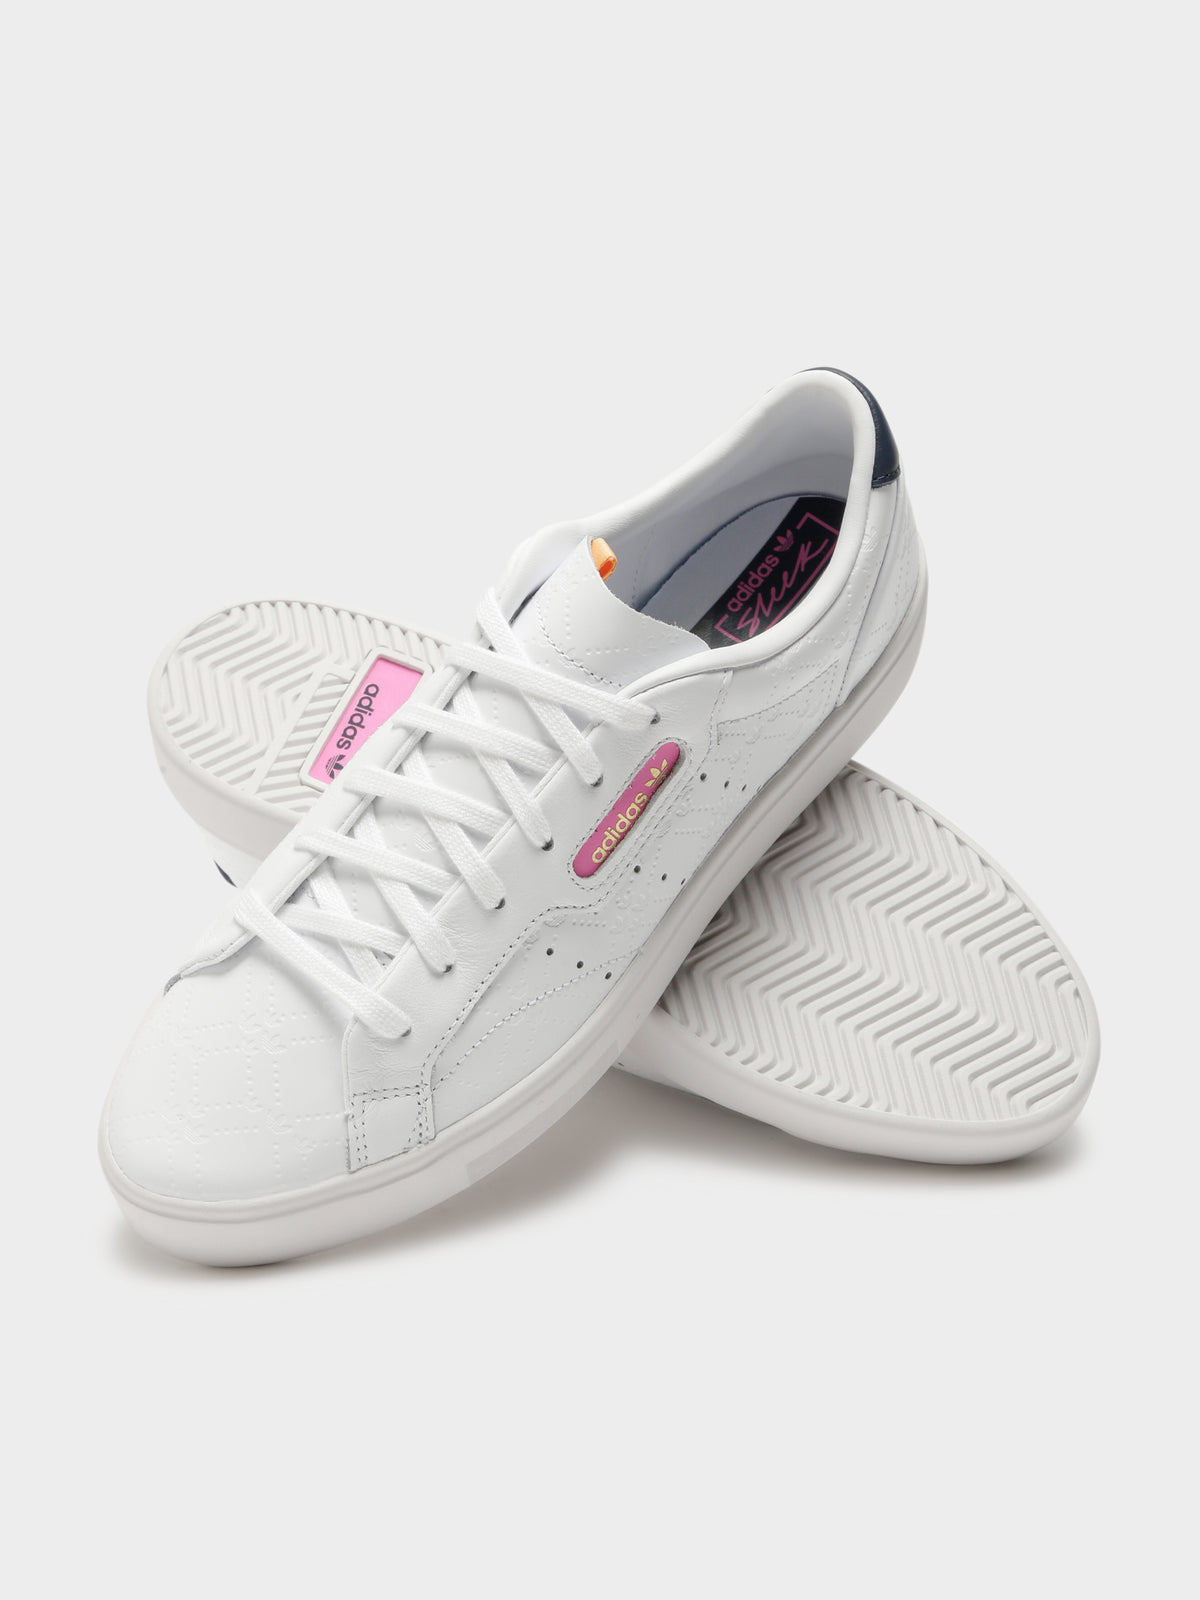 Womens Sleek Sneakers in White